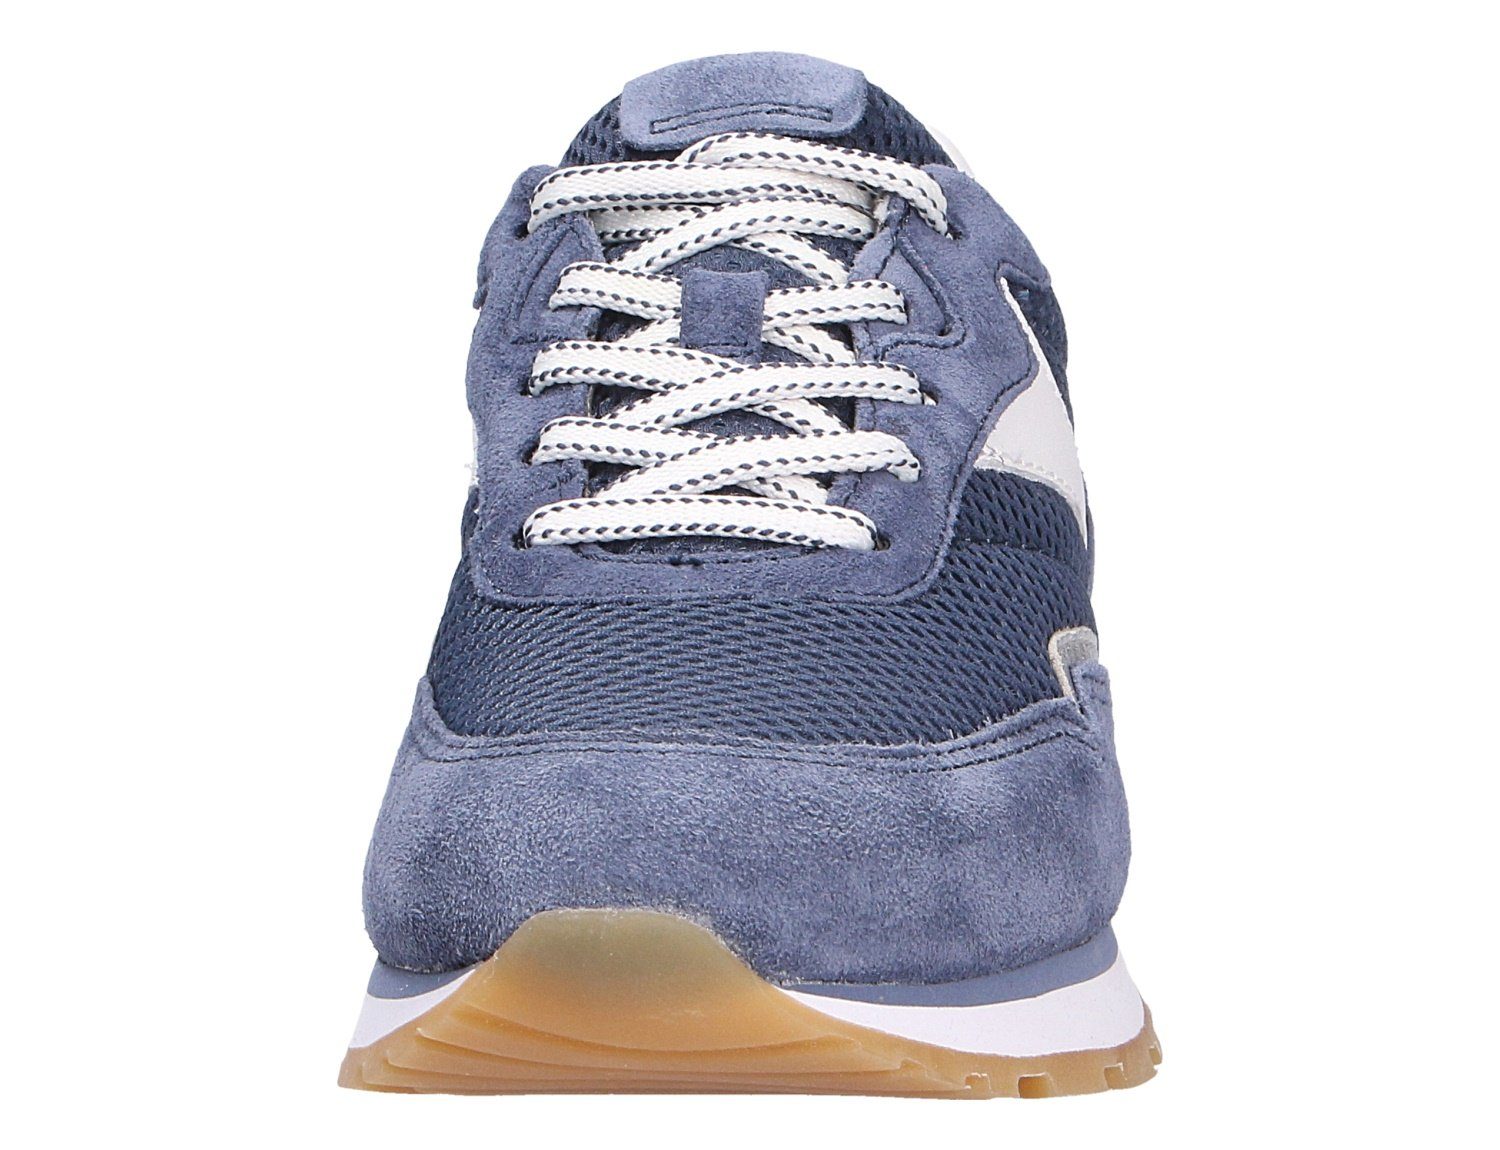 Gabor Sneaker Weicher Gehcomfort Blau 26) / (jeans/weiss/silber